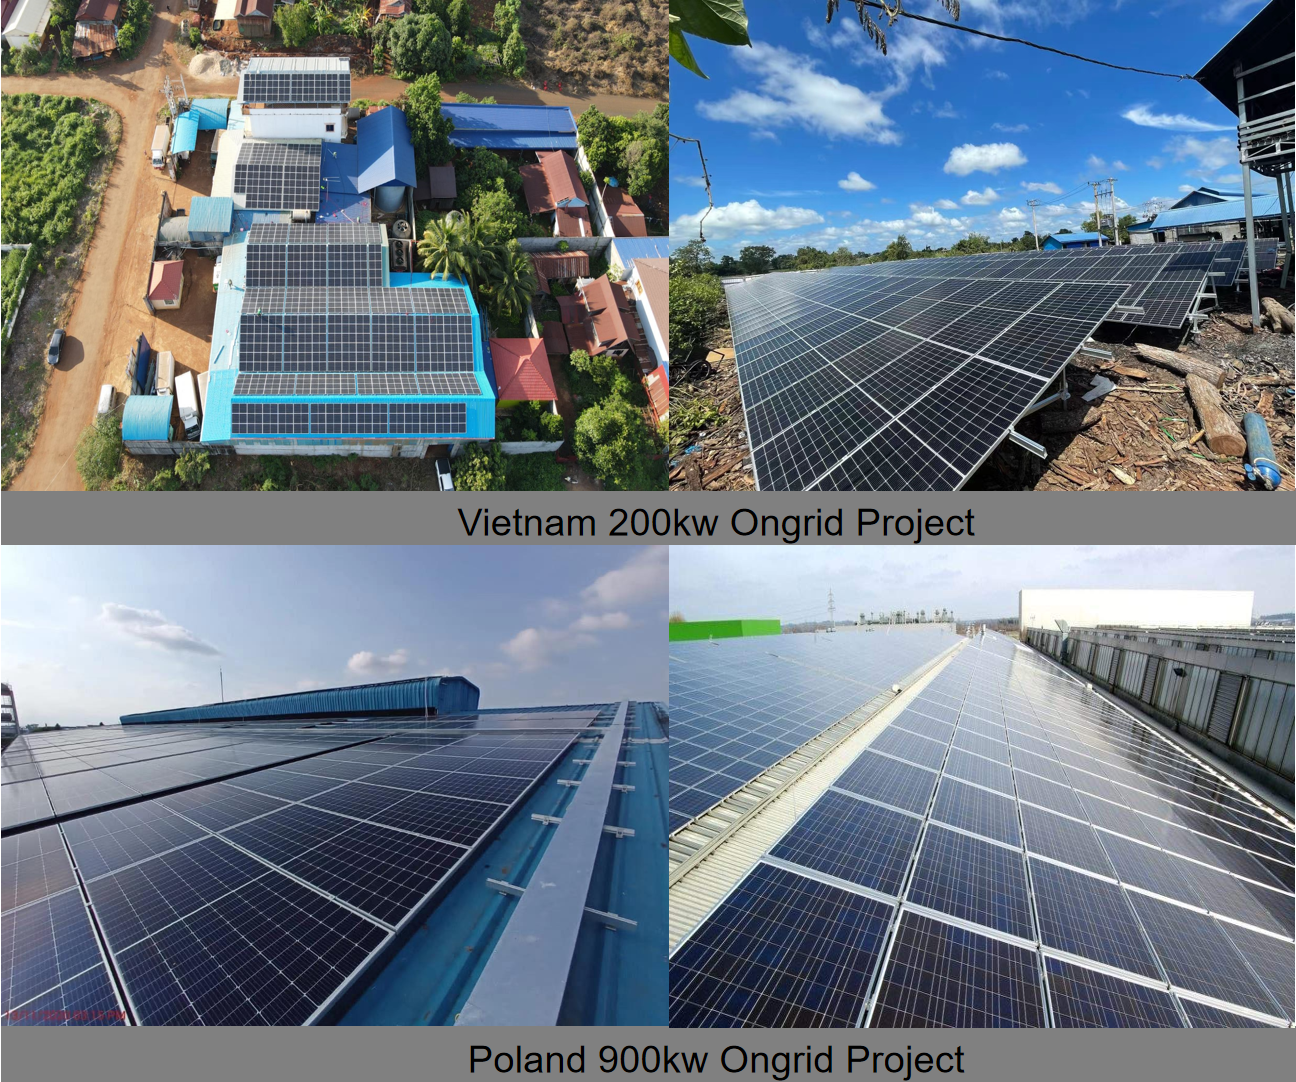  LVTOPSUN High Efficiency 440w Solar Panel Photovoltaic Module Mono Cell 